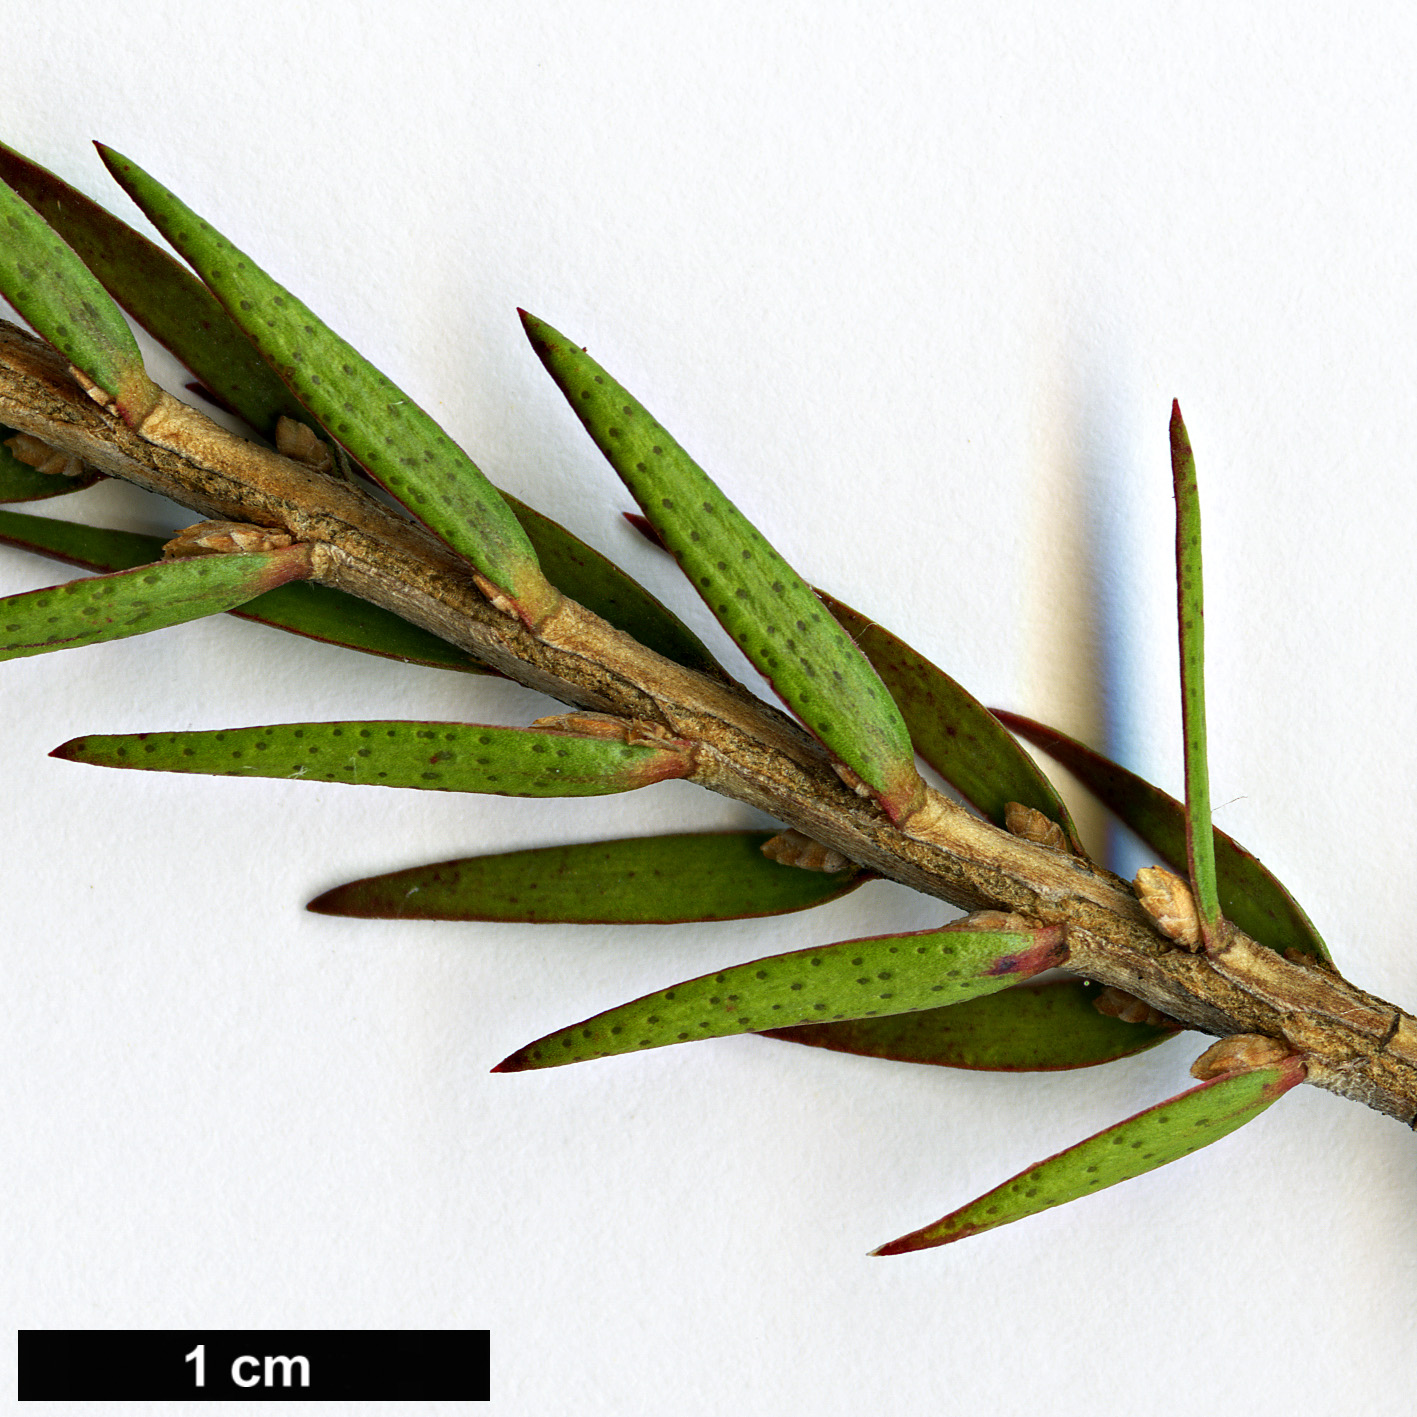 High resolution image: Family: Myrtaceae - Genus: Melaleuca - Taxon: wilsonii